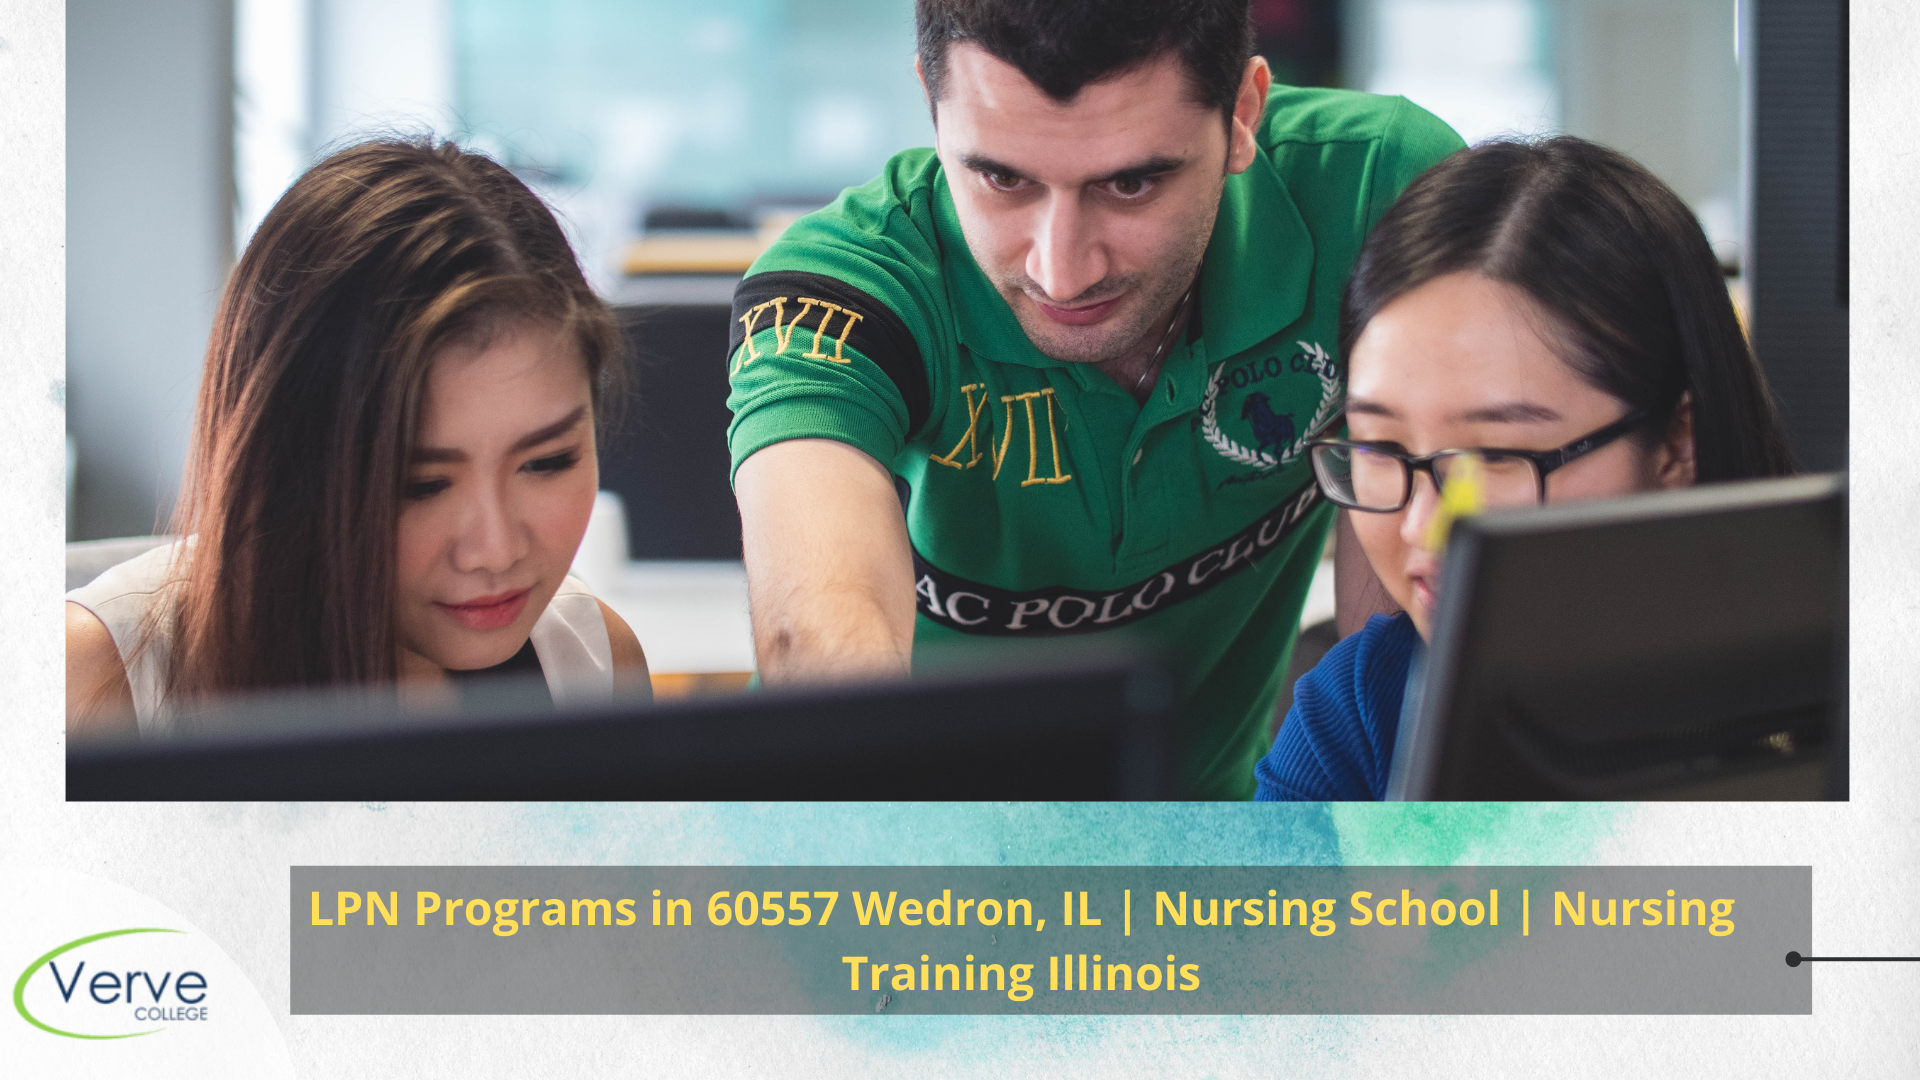 LPN Programs in 60557 Wedron, IL | Nursing School | Nursing Training Illinois